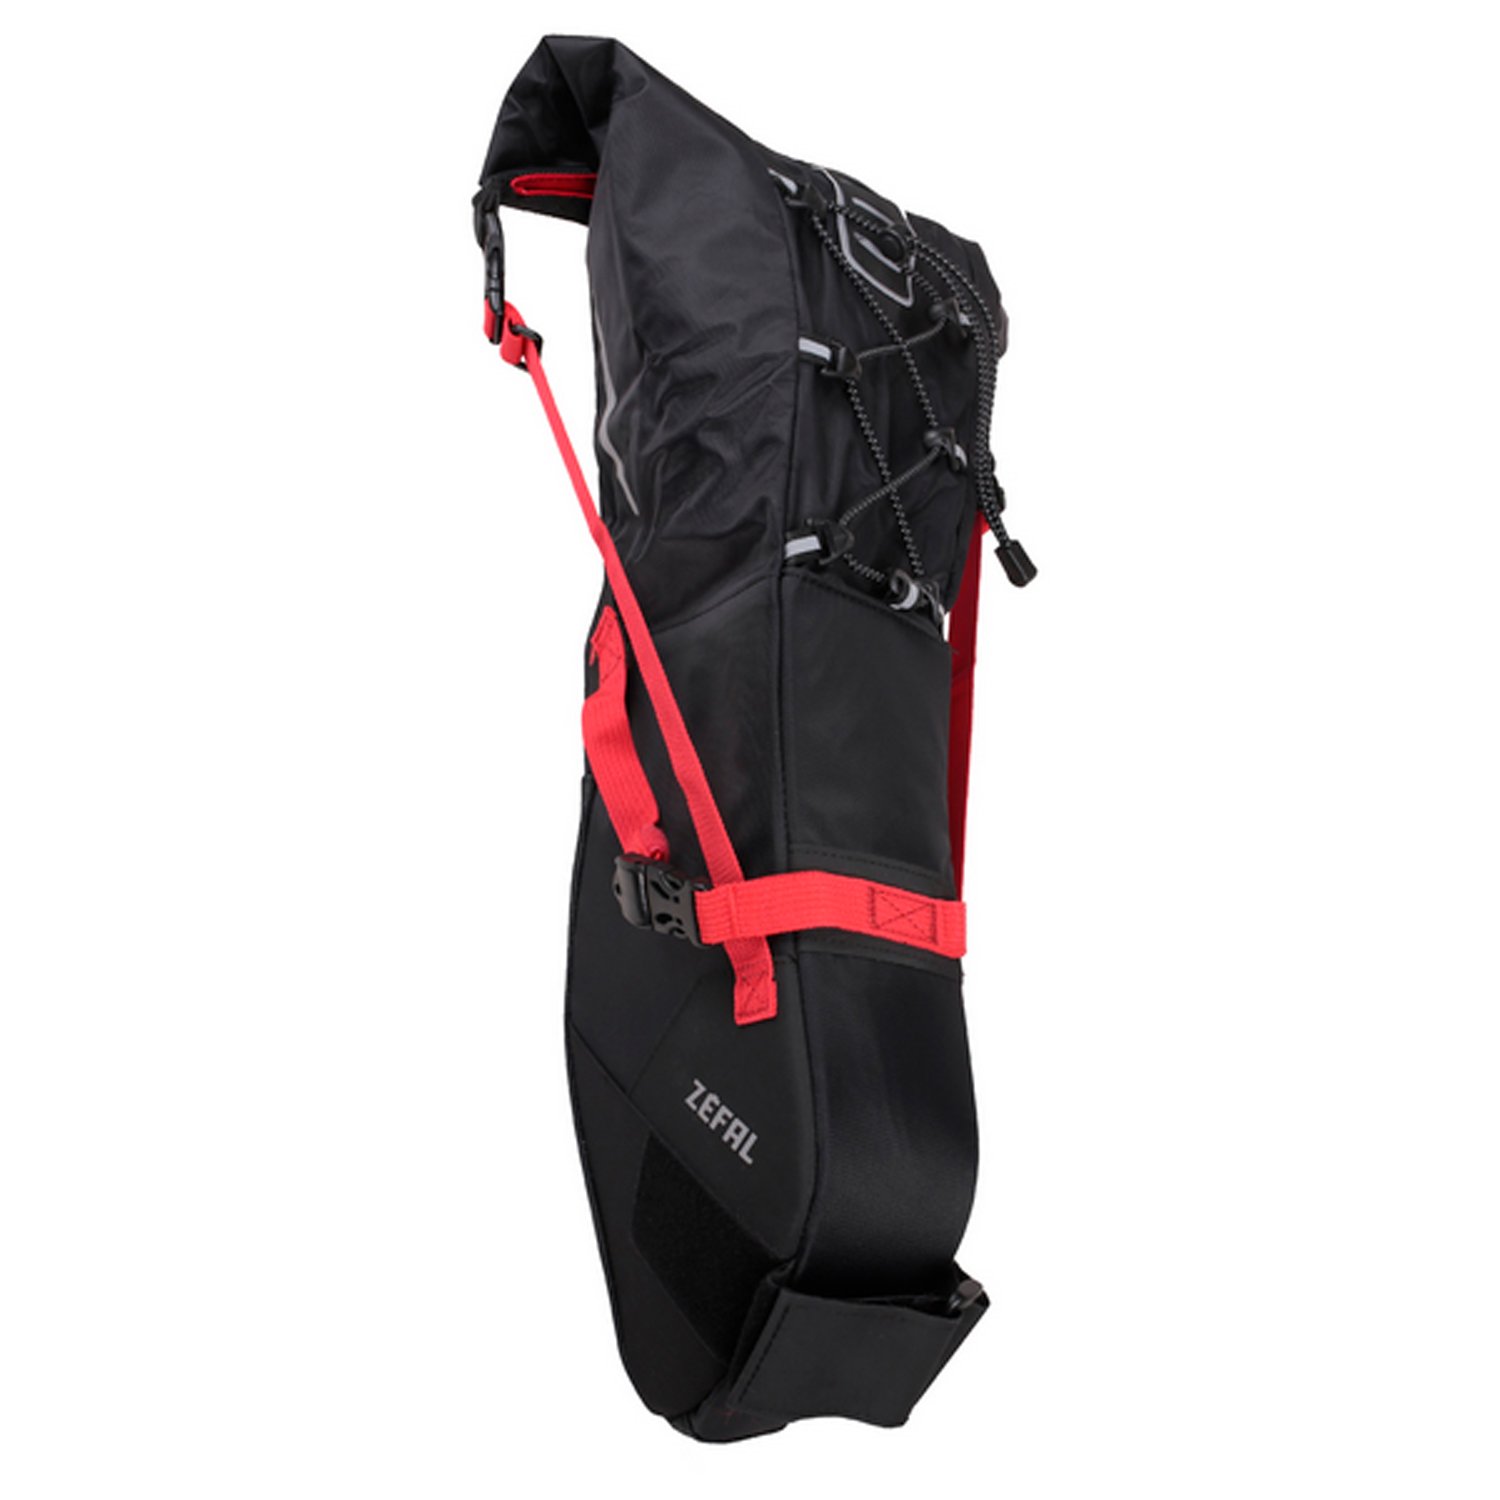 Сумка велосипедная Zefal Z Adventure R11 Saddle Bag, подседельная, объем от 5 до 11L, красный/черный, 2023, 7001 сумка велосипедная zefal iron pack 2 s tf saddle bag подседельная 0 5l 2023 7025